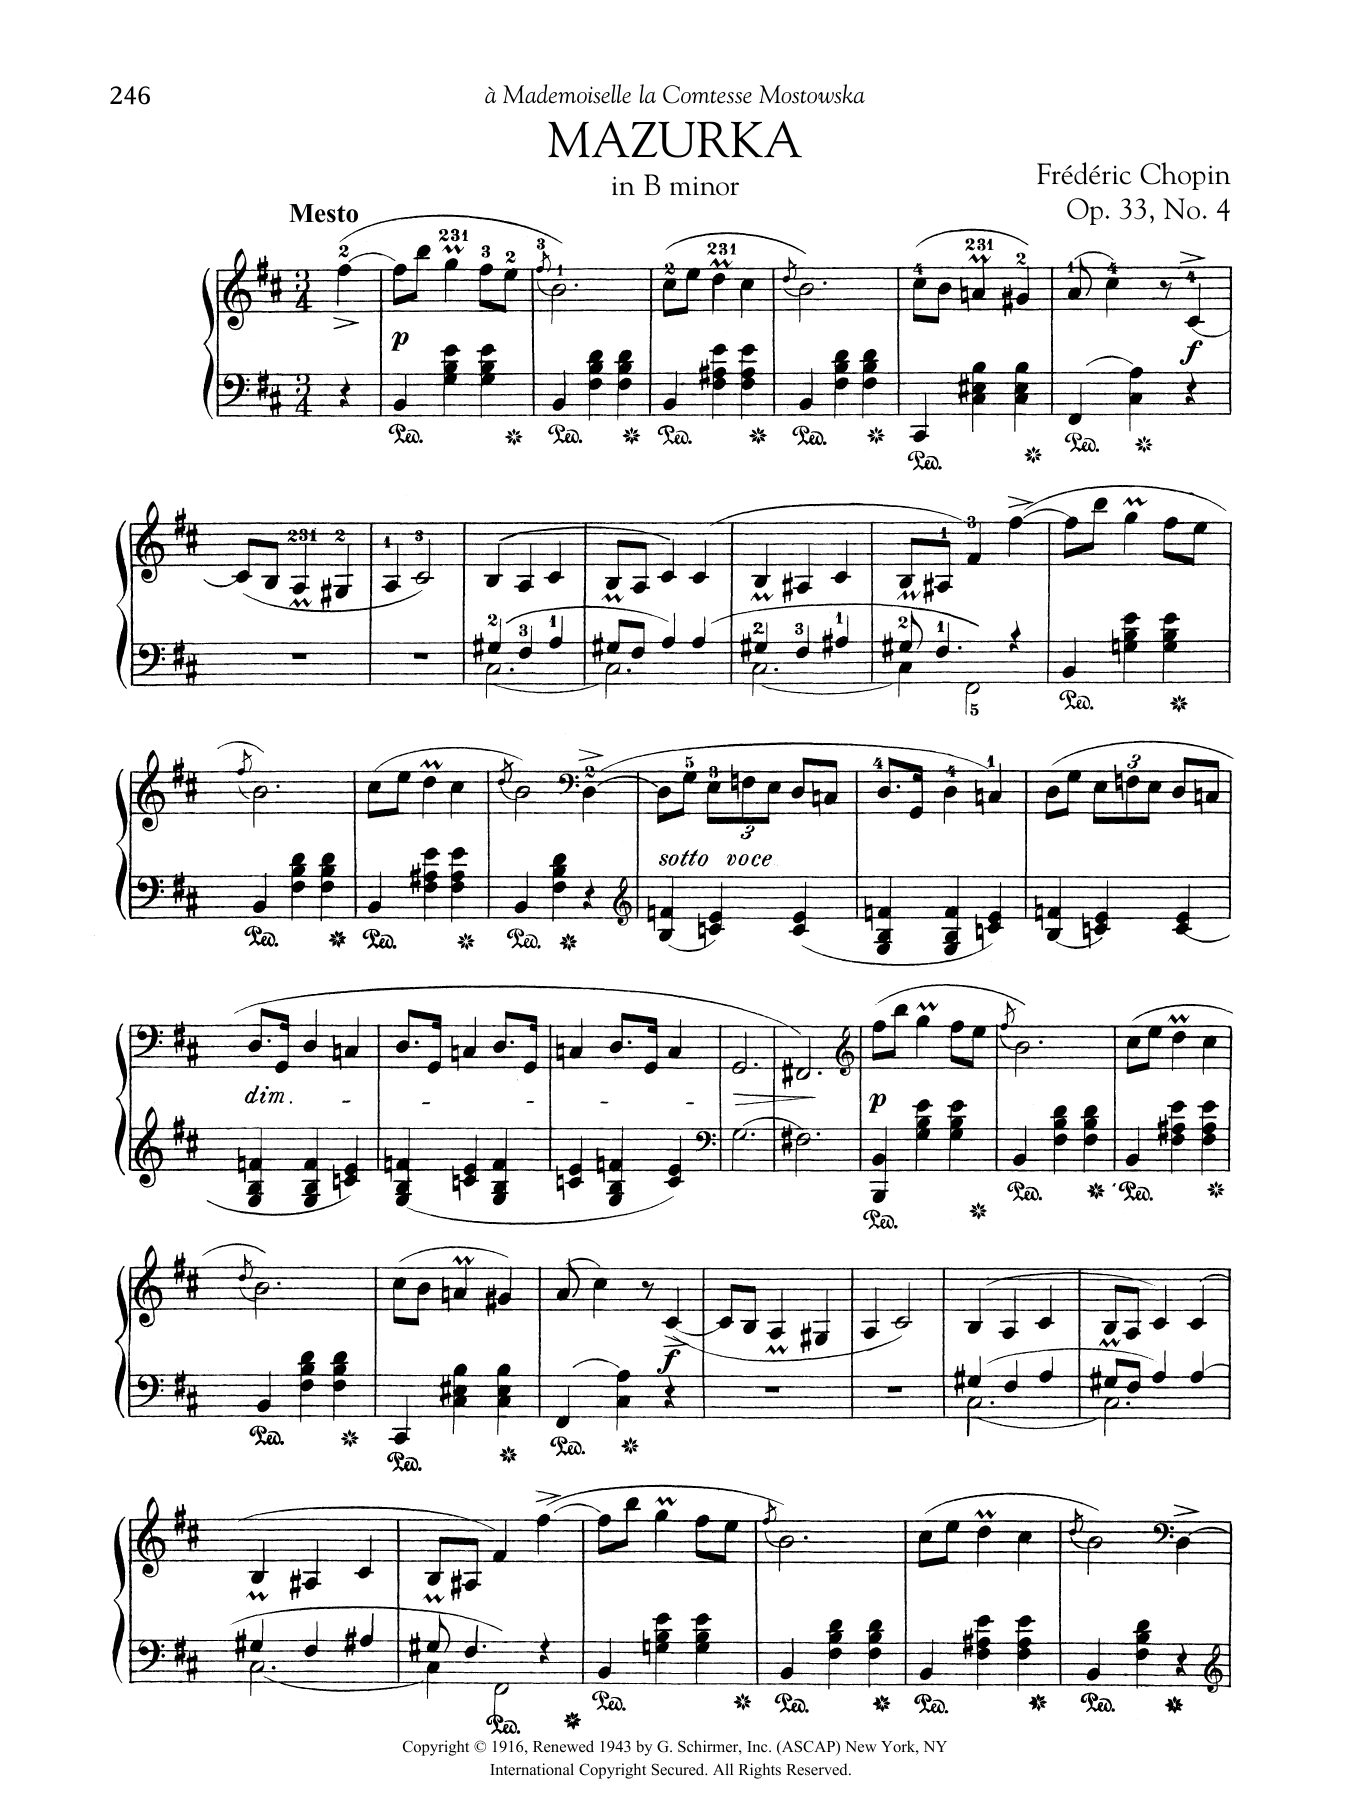 Download Frederic Chopin Mazurka in B minor, Op. 33, No. 4 Sheet Music